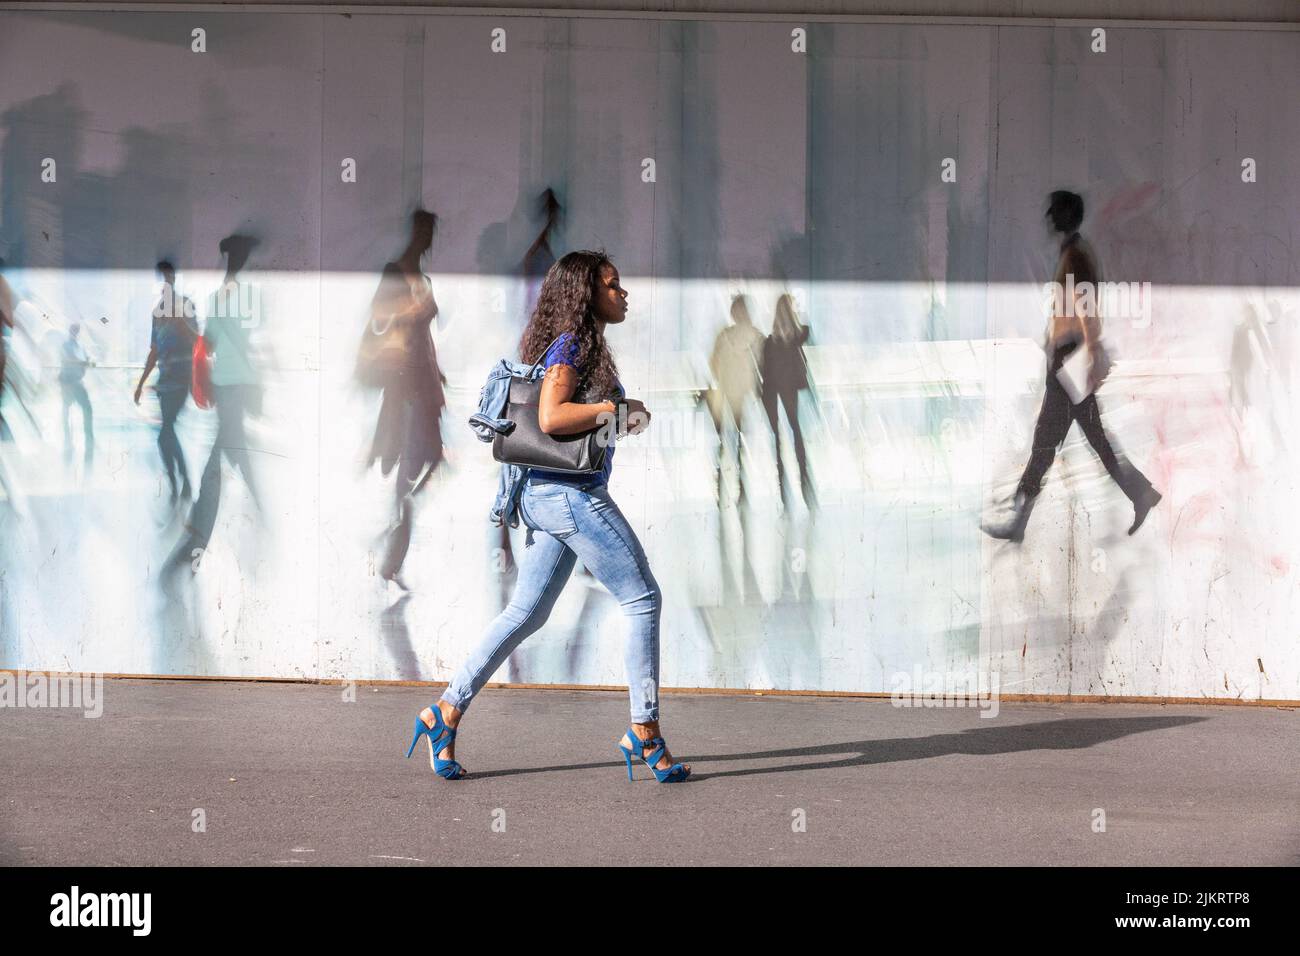 Giovane donna con tacchi alti che cammina di fronte ad una palisata decorata con figure di passanti Foto Stock